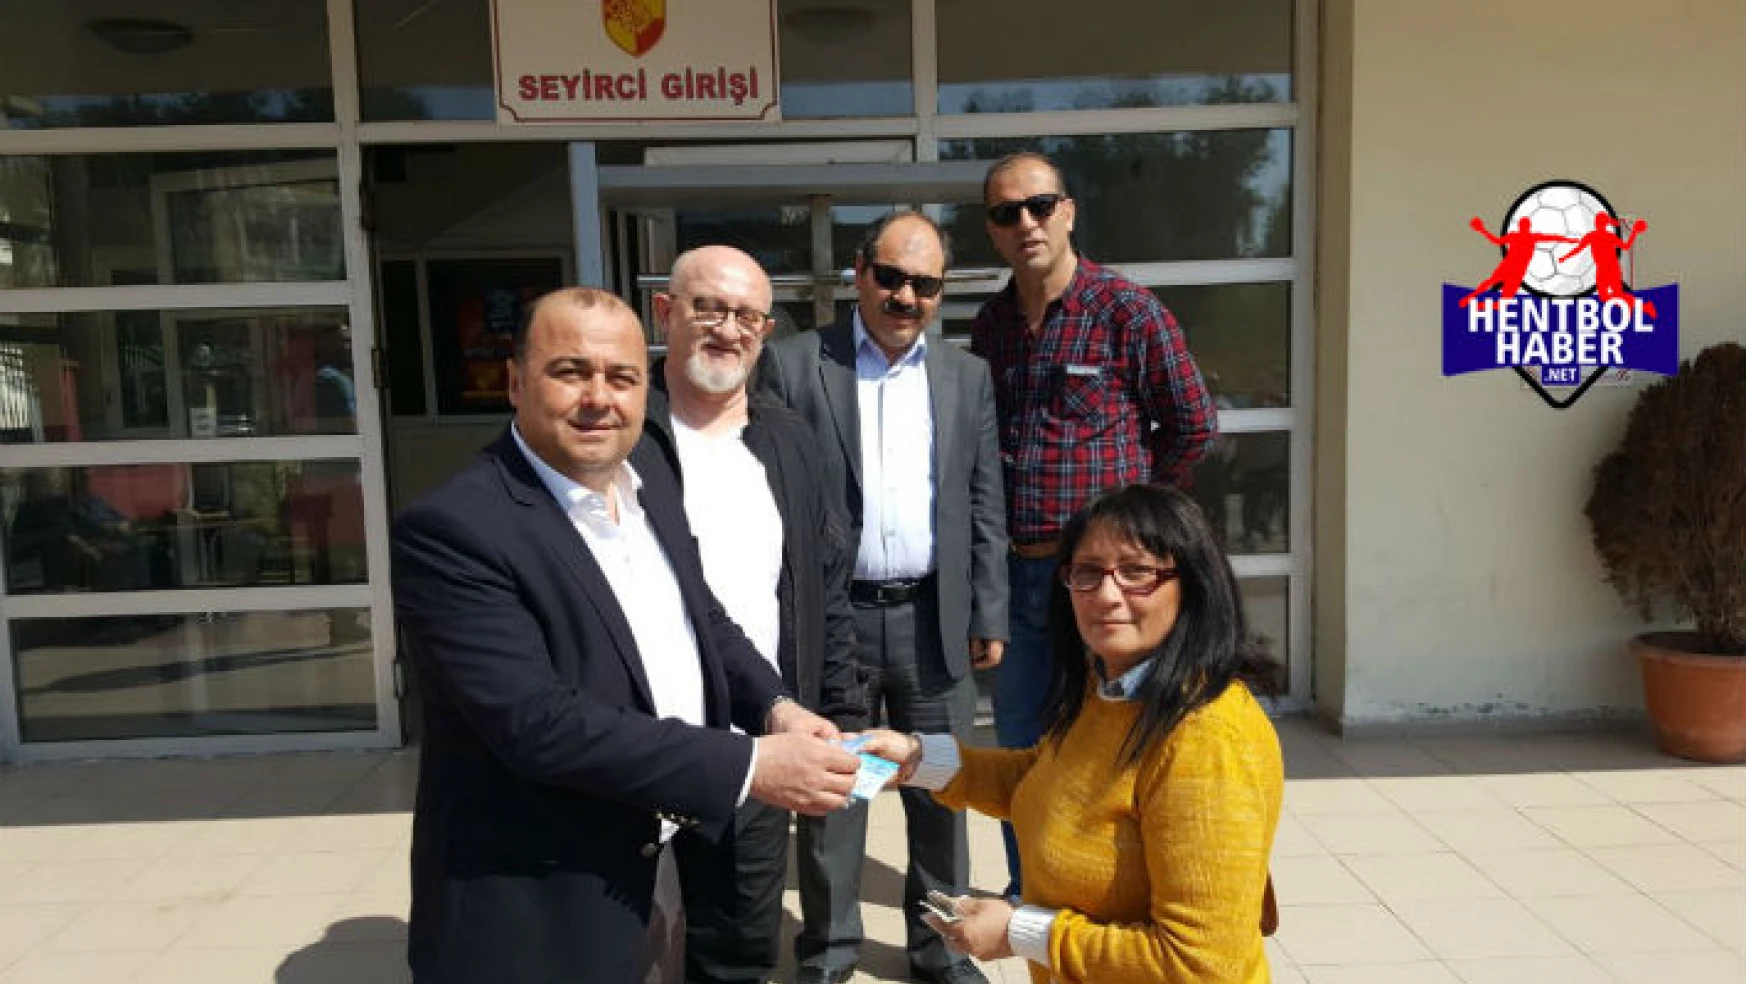 Merzifon Belediyesi SK’dan Eymen Bebeğe destek!